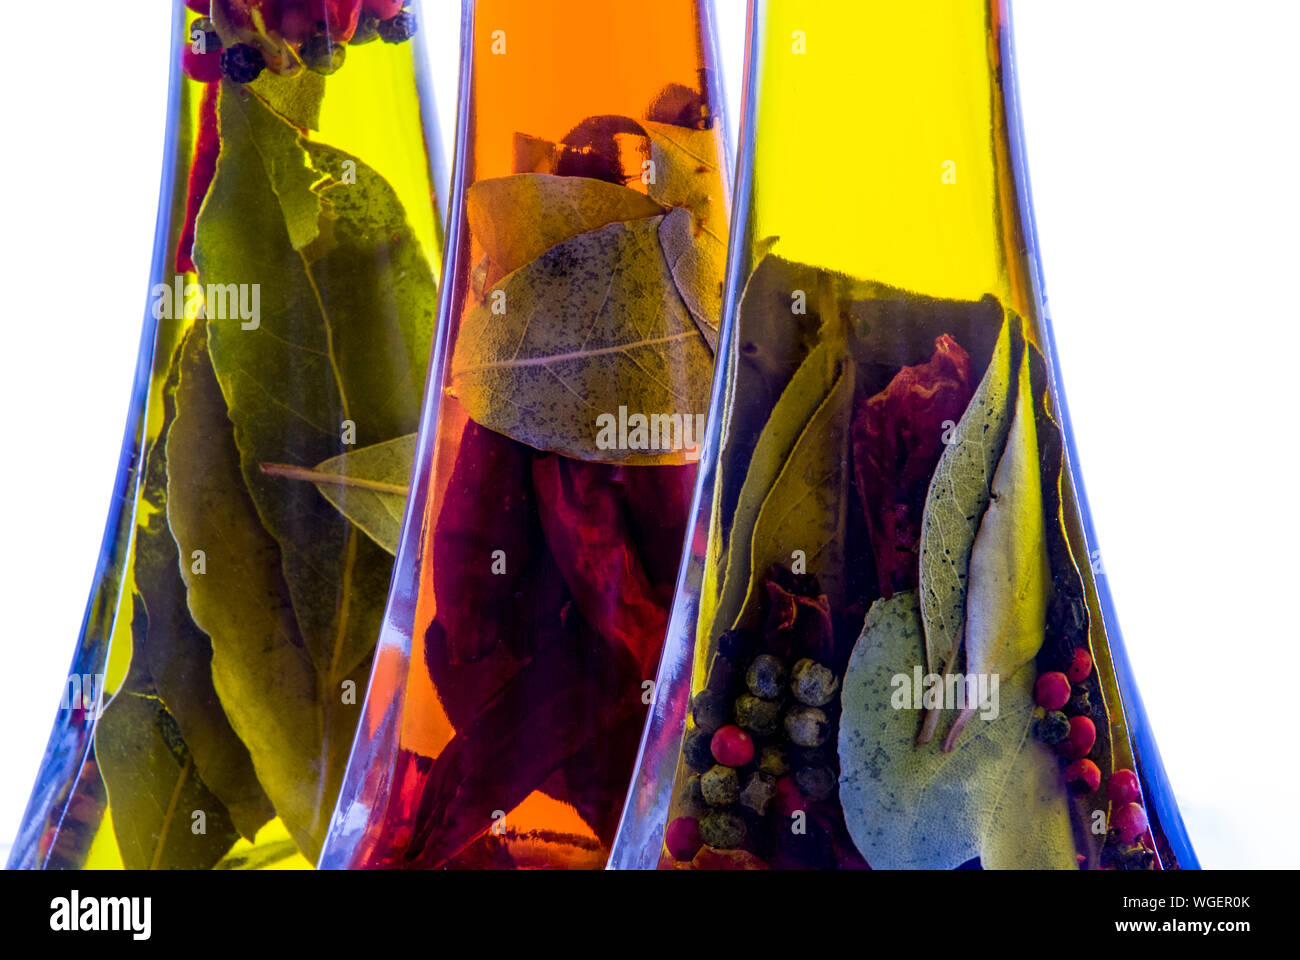 High Key tiros de tres botellas de aceite de oliva infundido con una mezcla de hierbas y especias. Foto de stock